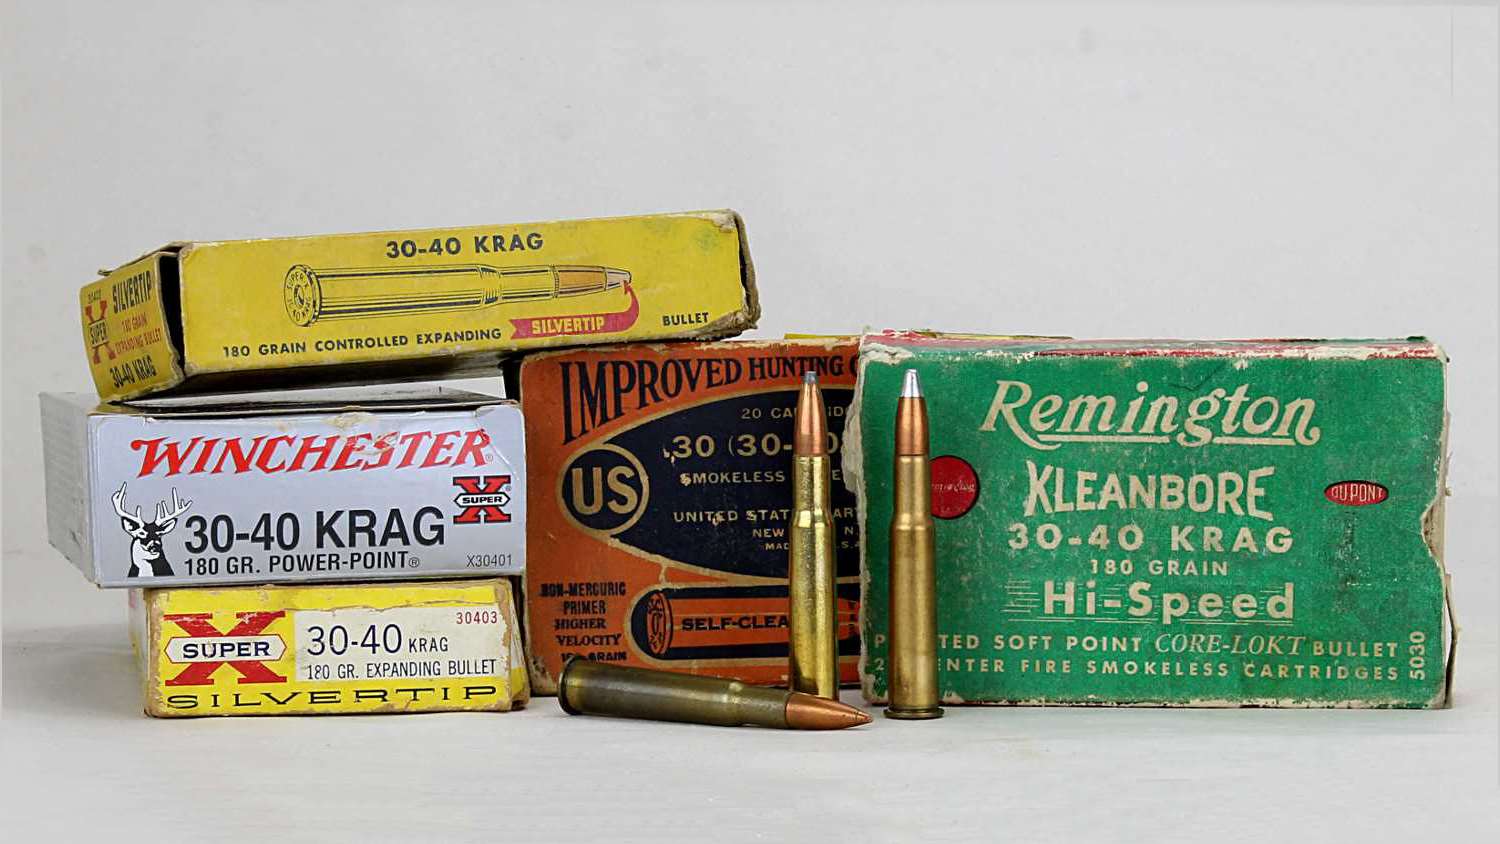 .30-40 Krag ammo boxes